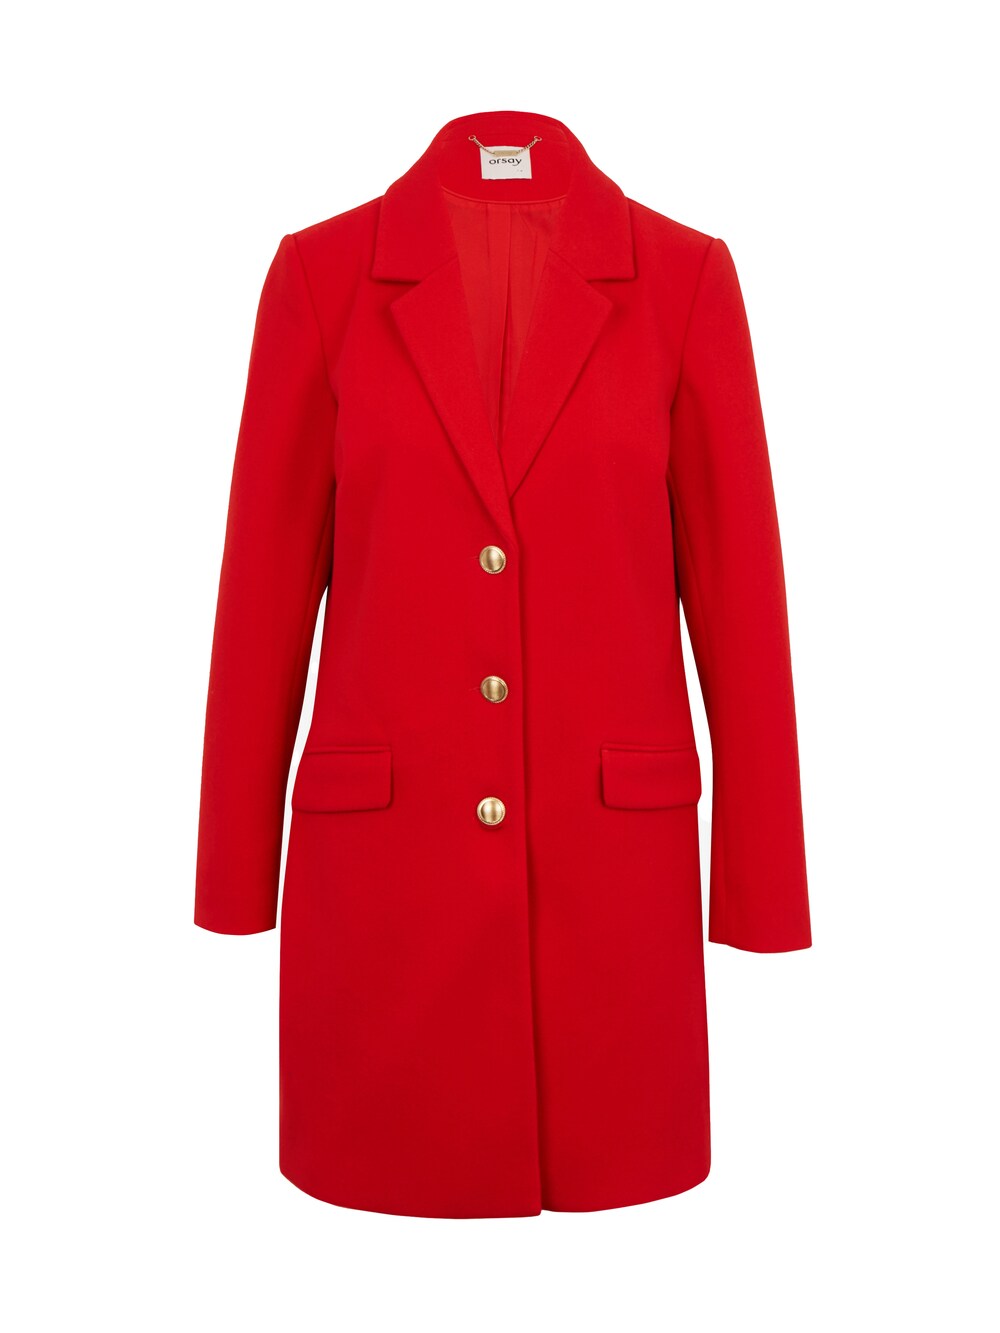 Межсезонное пальто Orsay, красный межсезонное пальто orsay светло серый